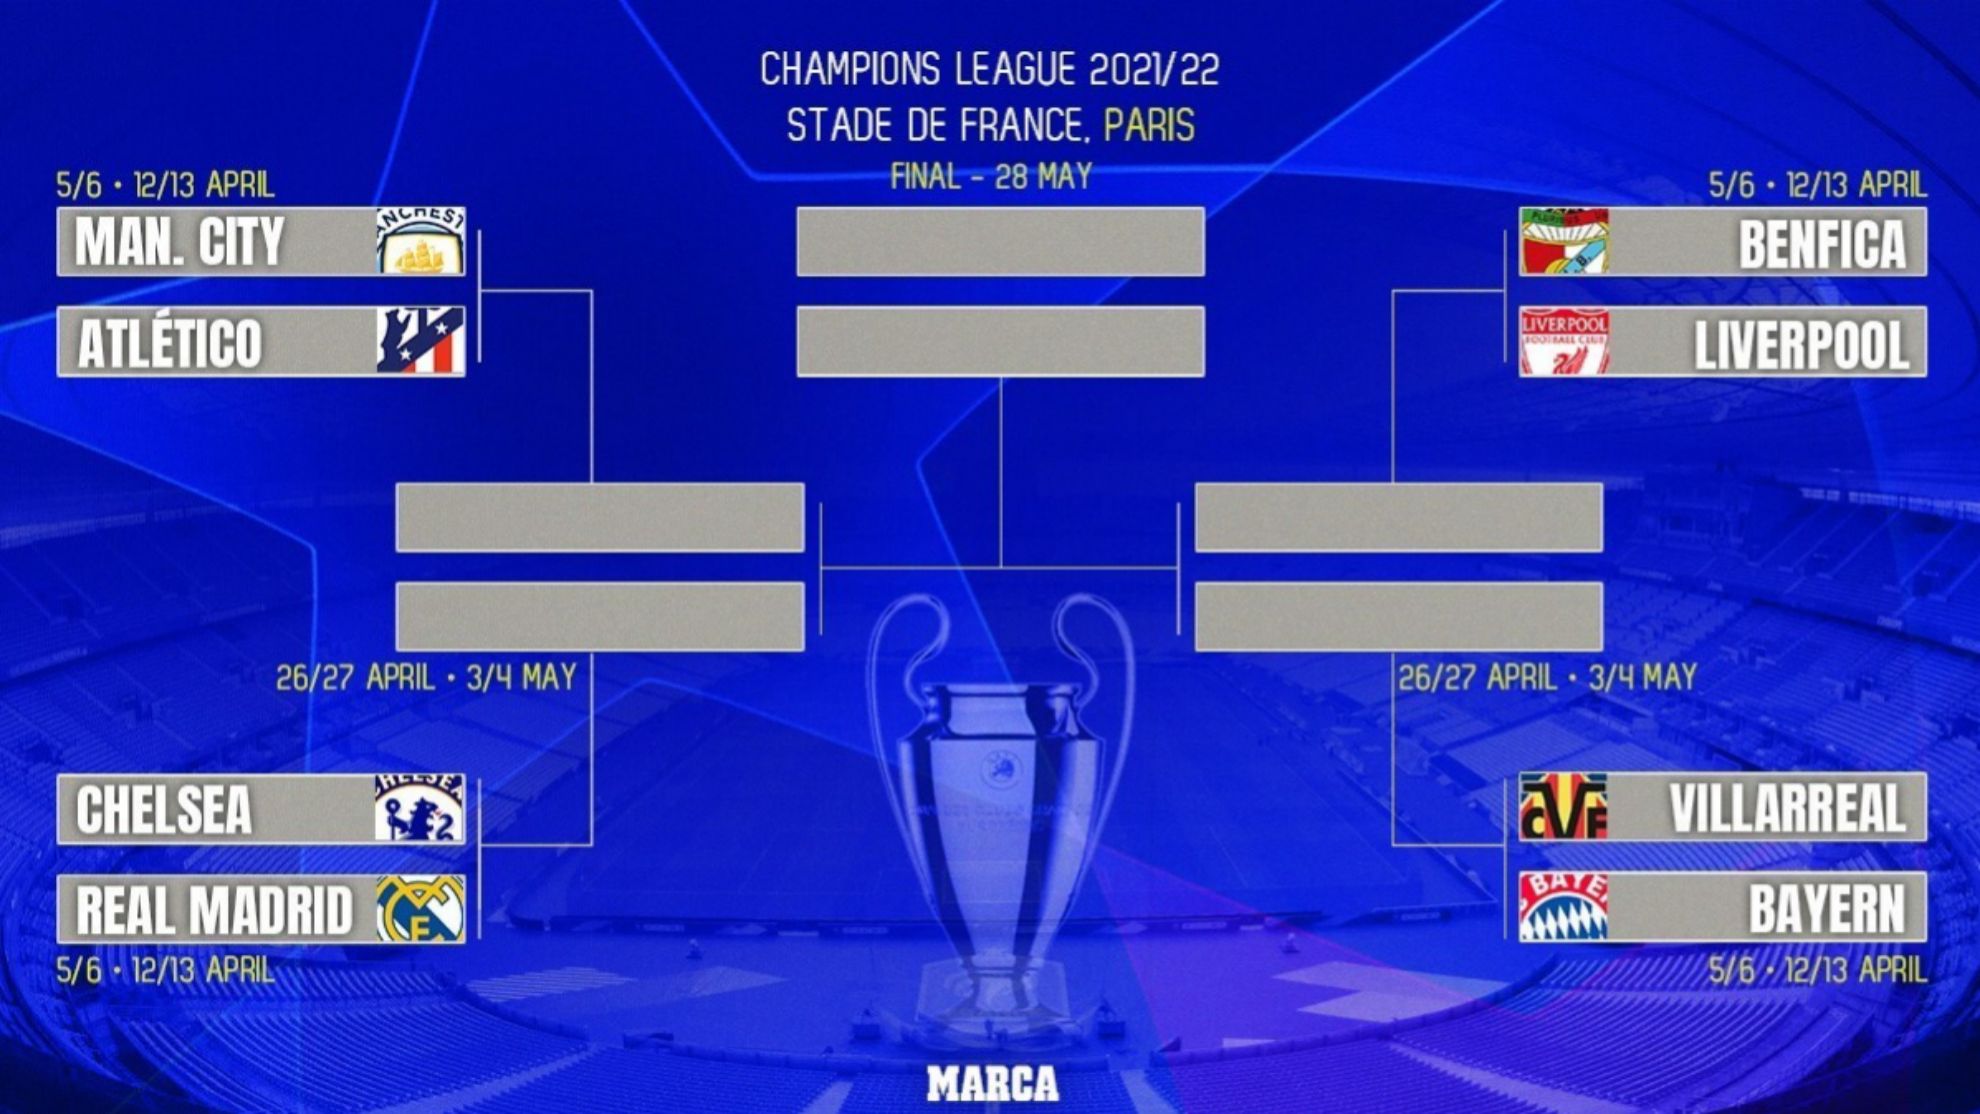 Champions league fixtures 2021/22